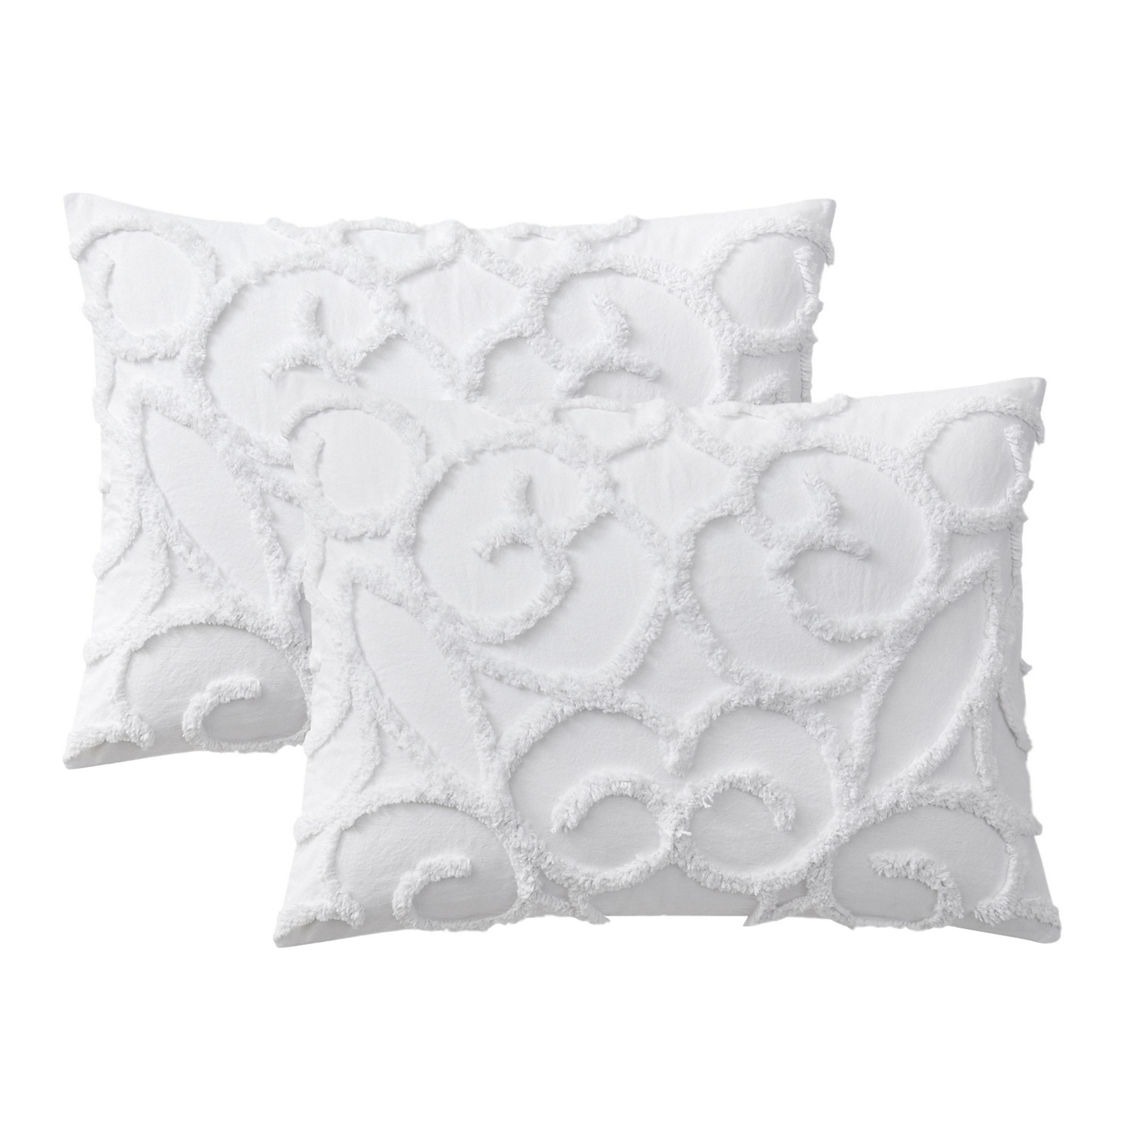 Indigo Ink White Tufted Medallion Cotton Boho Comforter Set - Image 4 of 5